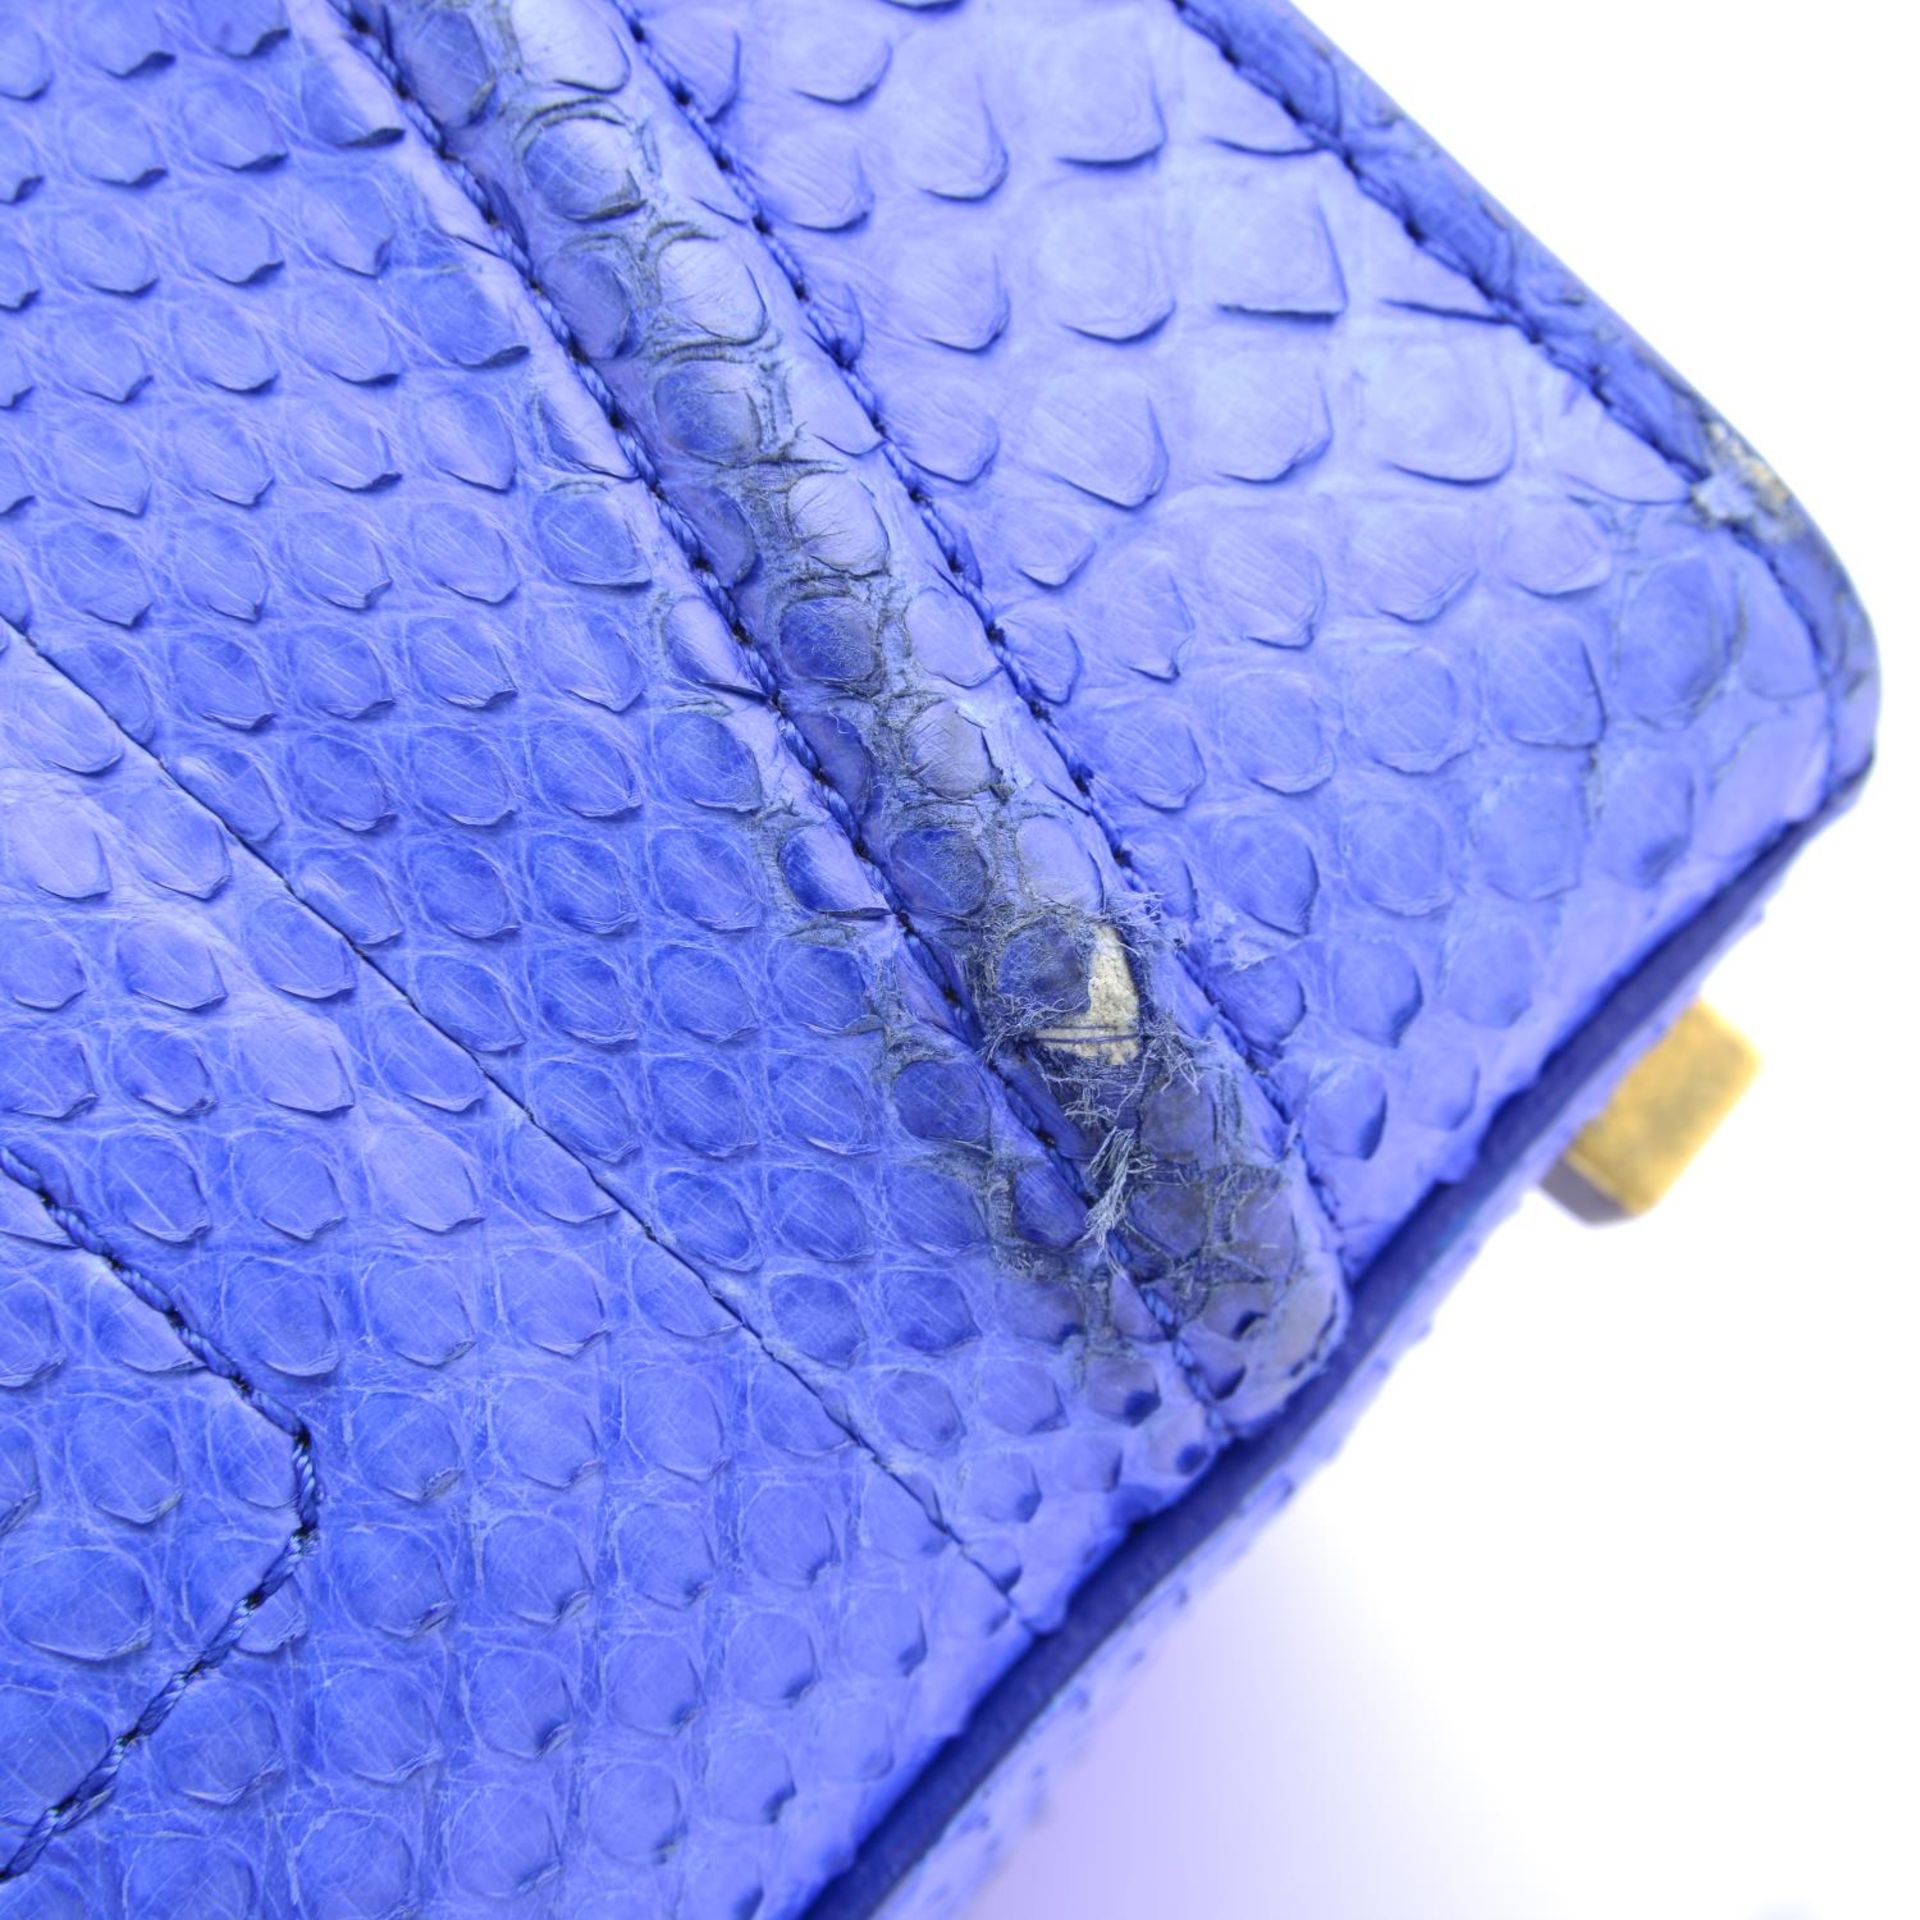 CÉLINE - a blue python skin Phantom handbag. - Image 8 of 9